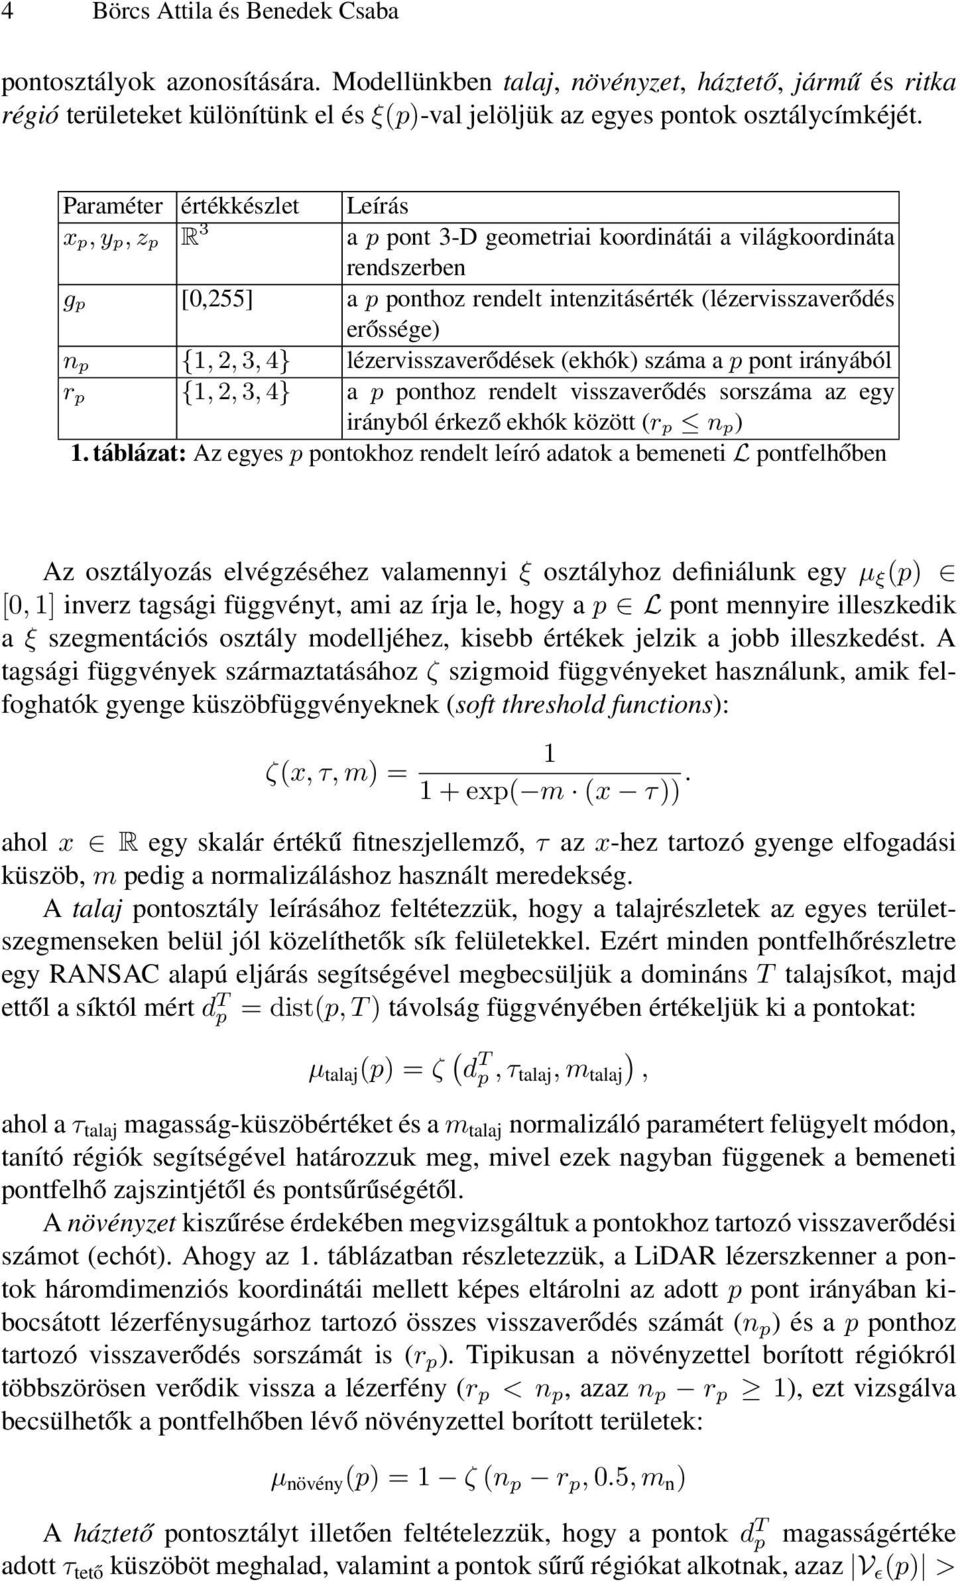 Paraméter értékkészlet Leírás x p, y p, z p R 3 a p pont 3-D geometriai koordinátái a világkoordináta rendszerben g p [0,255] a p ponthoz rendelt intenzitásérték (lézervisszaverődés erőssége) n p {1,